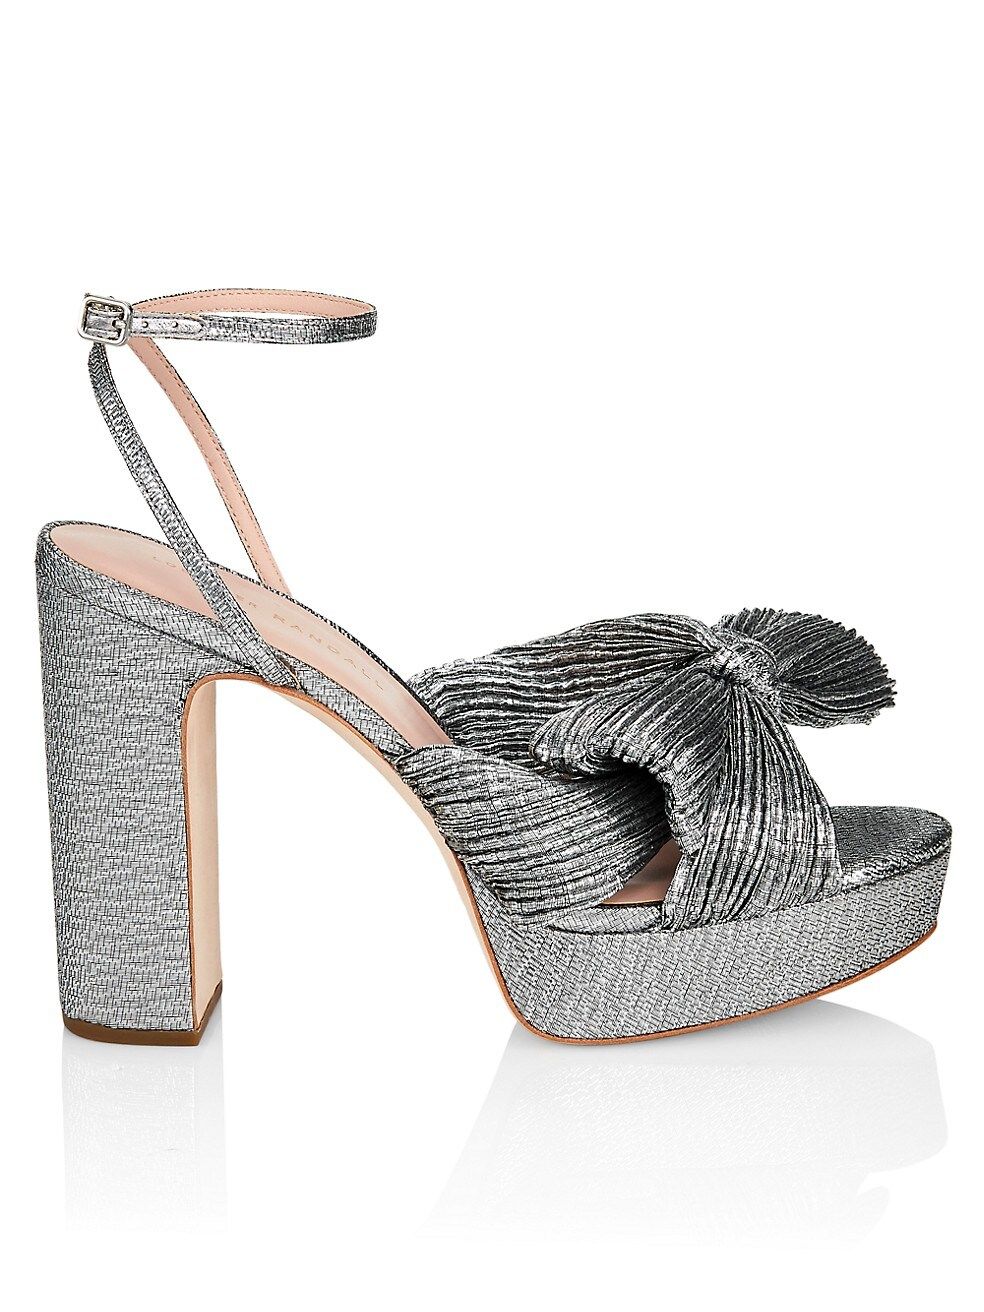 Loeffler Randall Natalia Pleated Platform Sandals | Saks Fifth Avenue